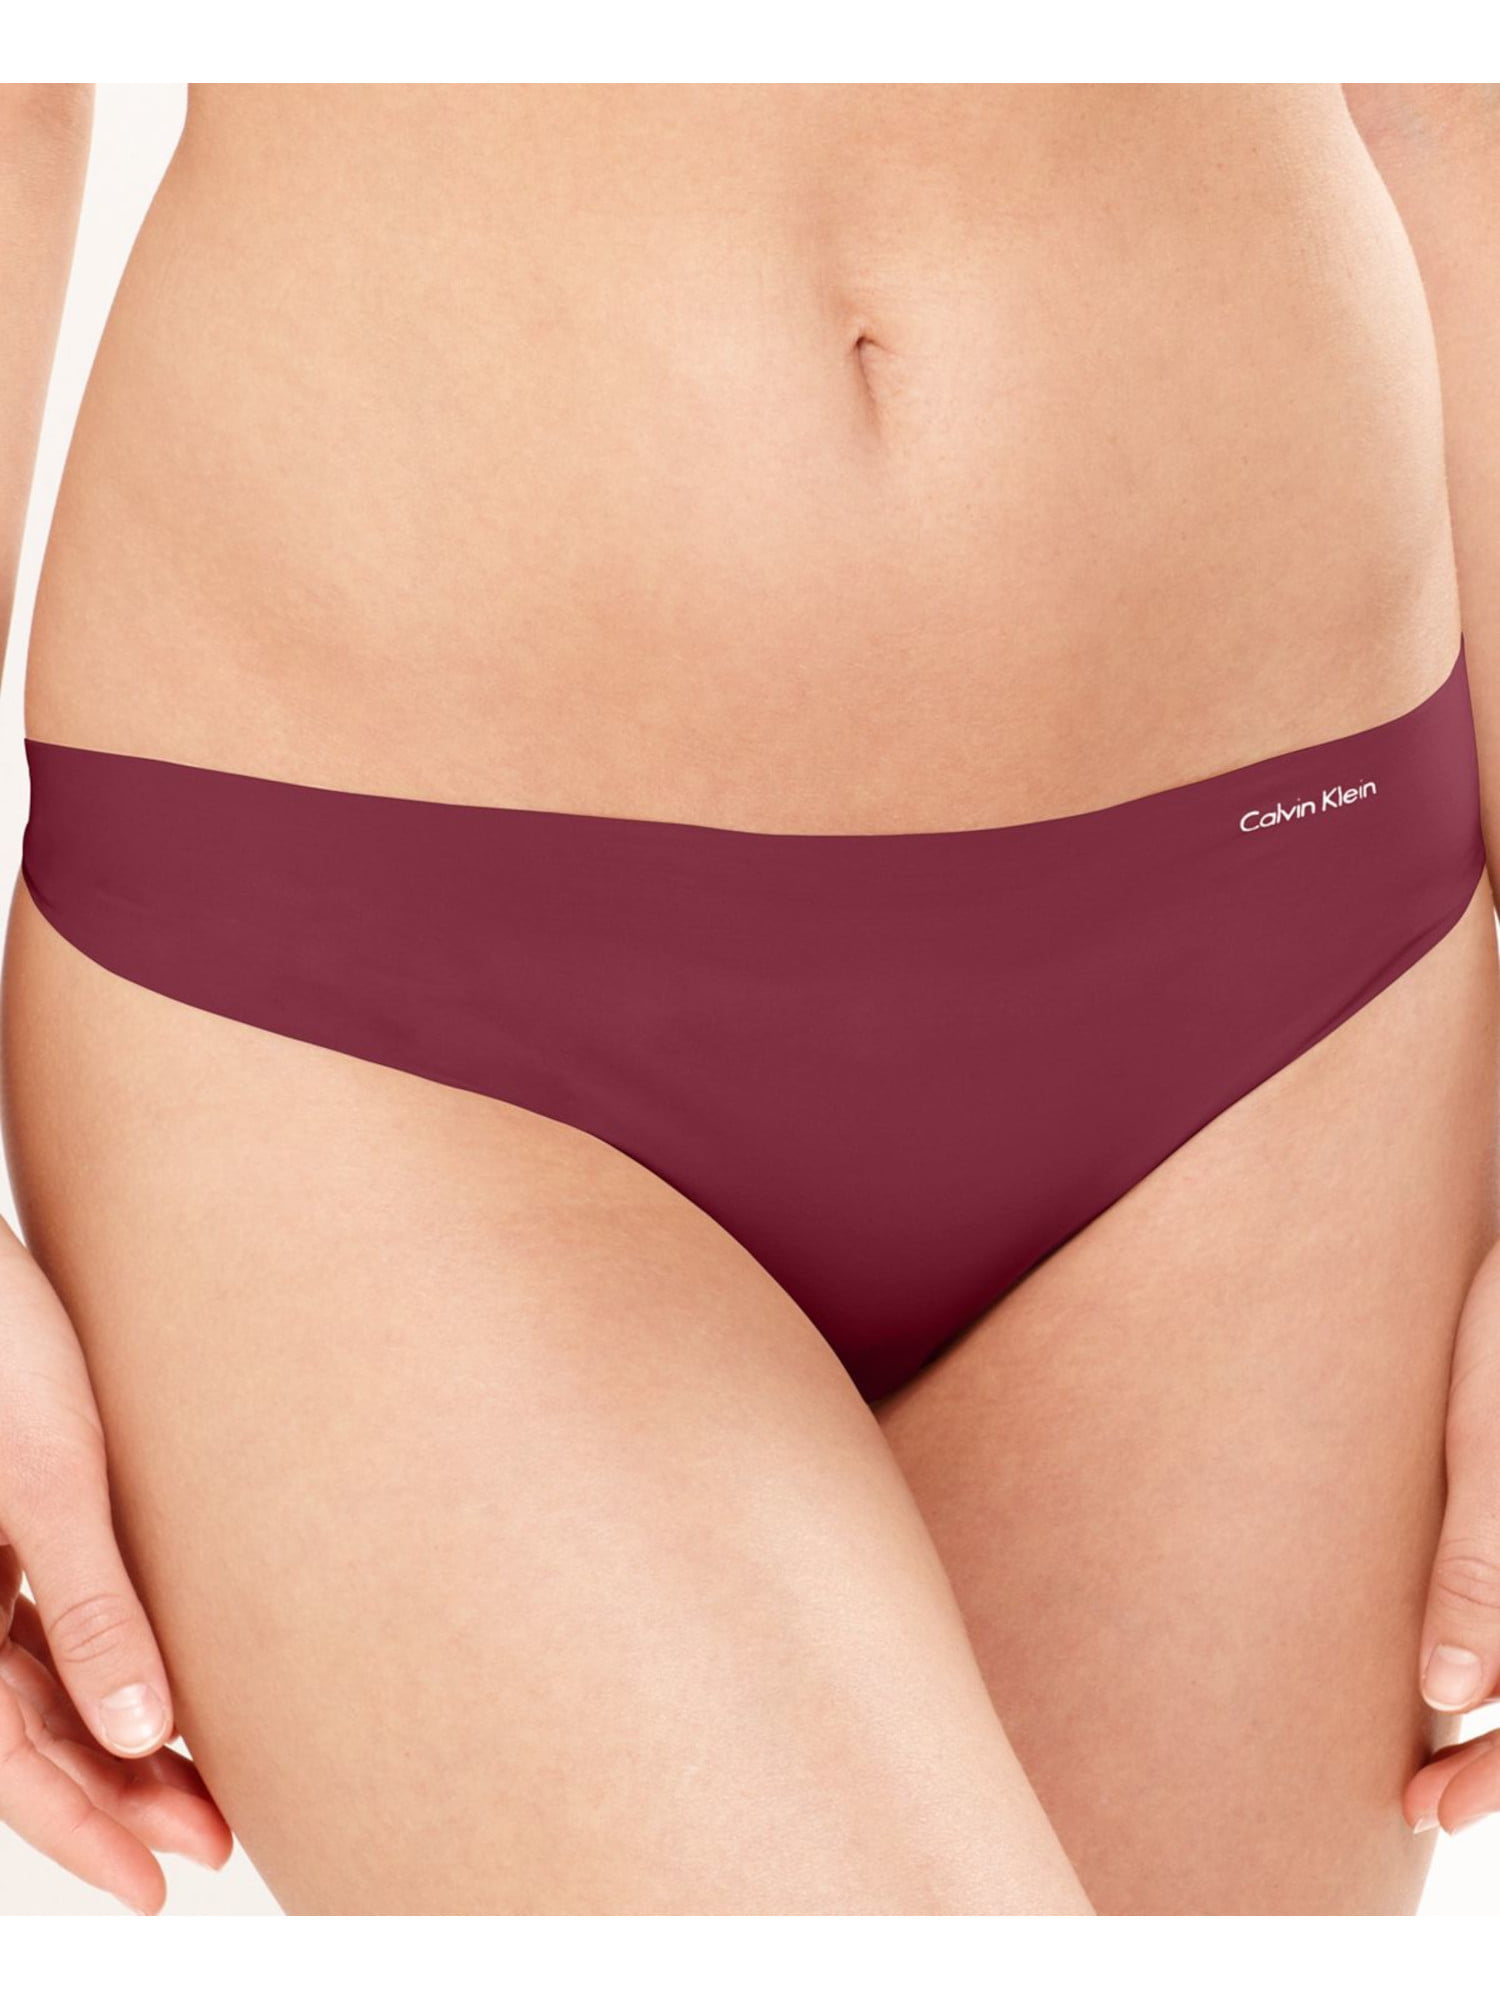 CALVIN KLEIN Intimates Burgundy Invisible Thong Underwear XL 